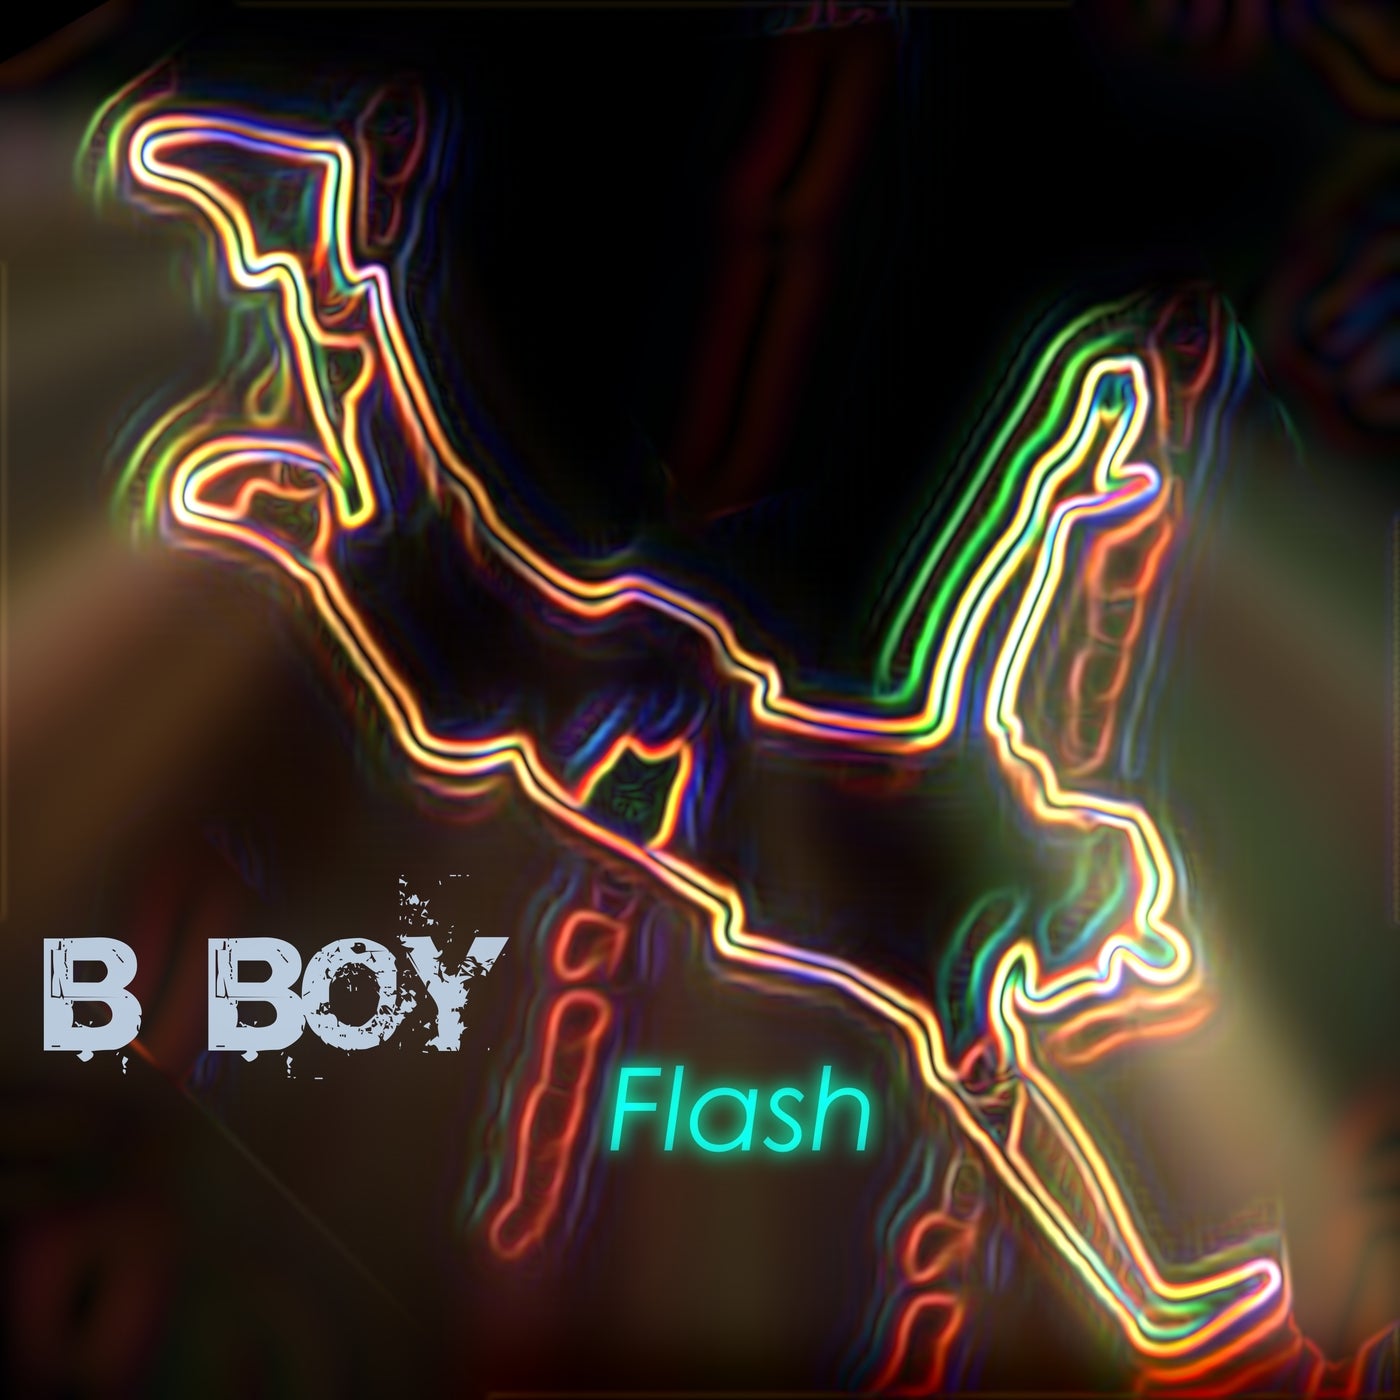 B Boy Flash